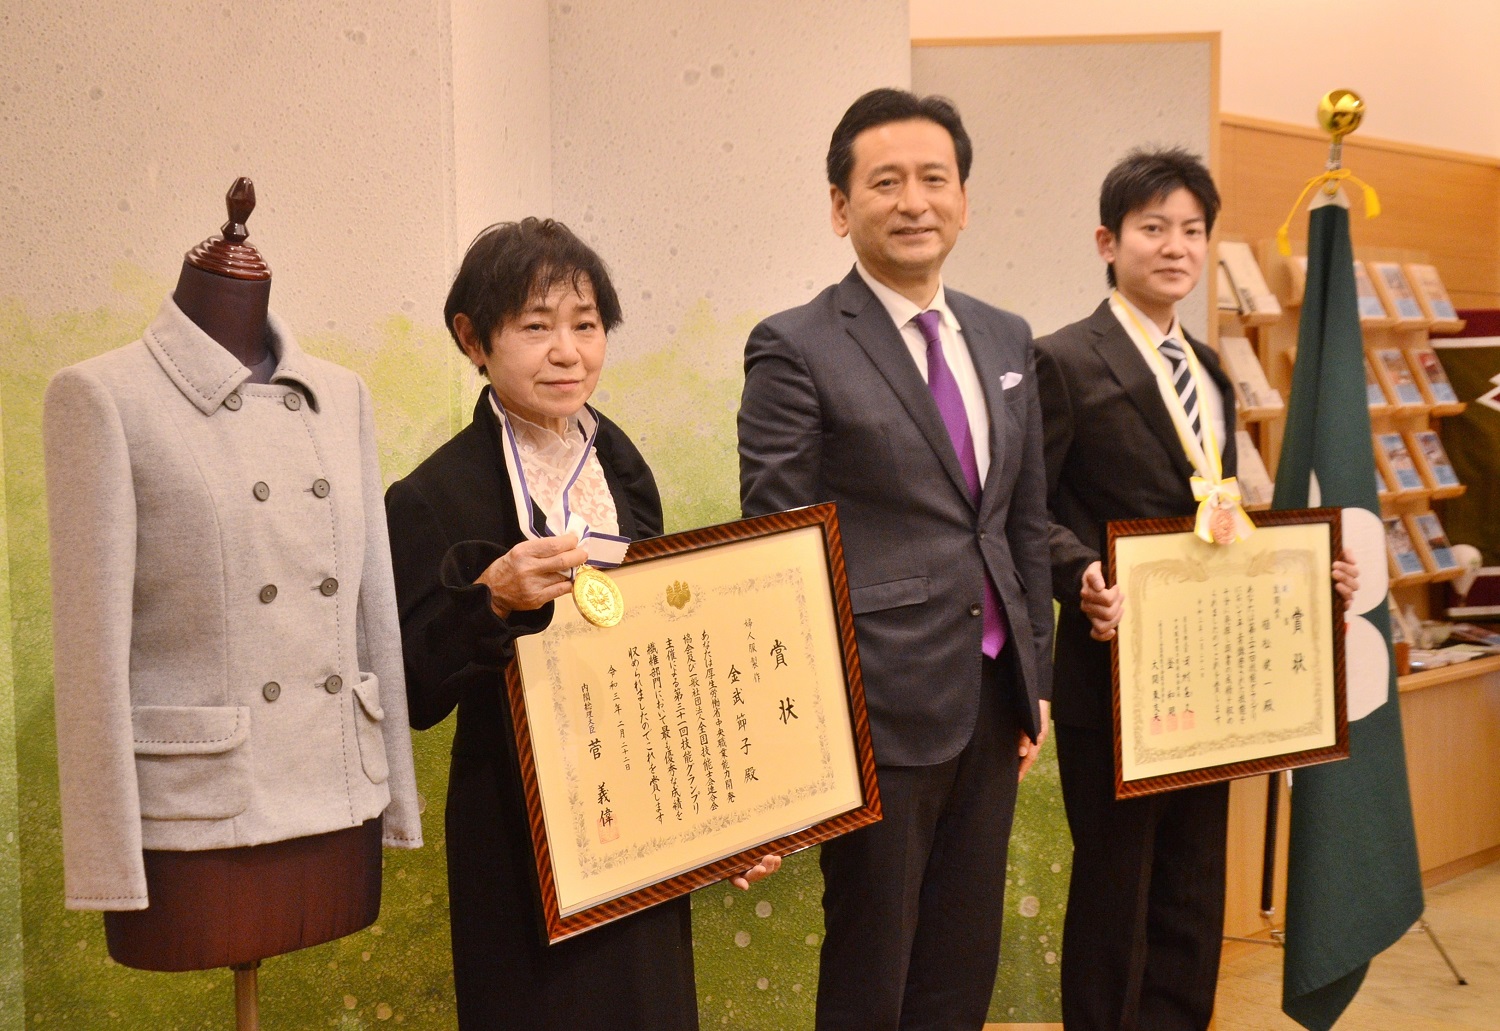 -技能グランプリで内閣総理大臣賞に輝いた金武節子さん（左）と敢闘賞を獲得した植松健一さん（右）